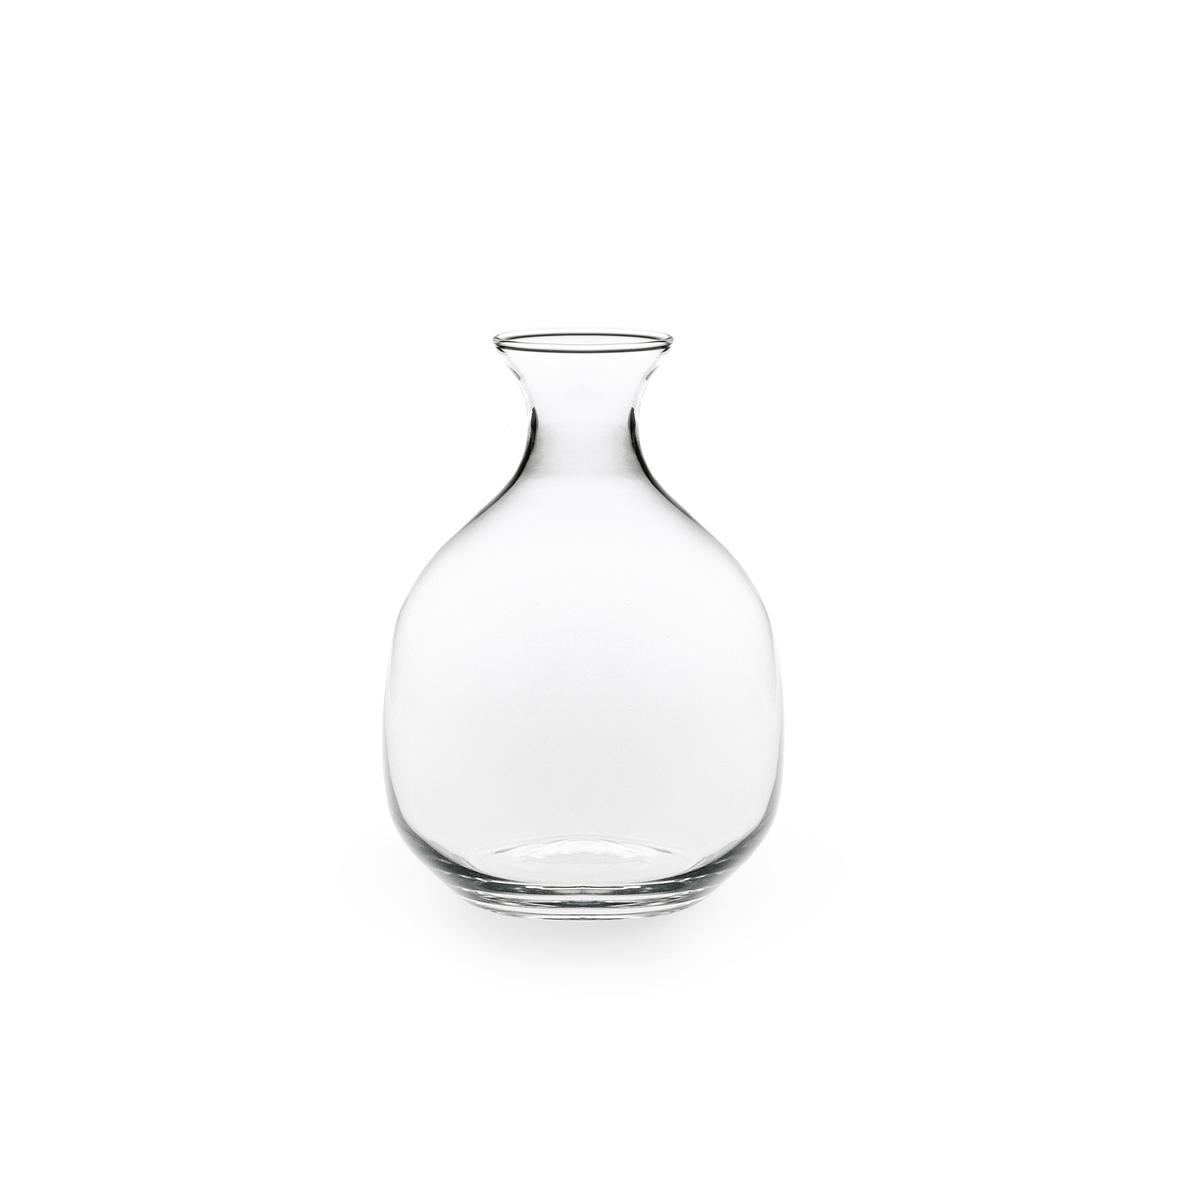 La jarra grande Polly de vidrio soplado es uno de los iconos de Paola C. y una de las piezas favoritas creadas por el diseñador Aldo Cibic, que la define como 